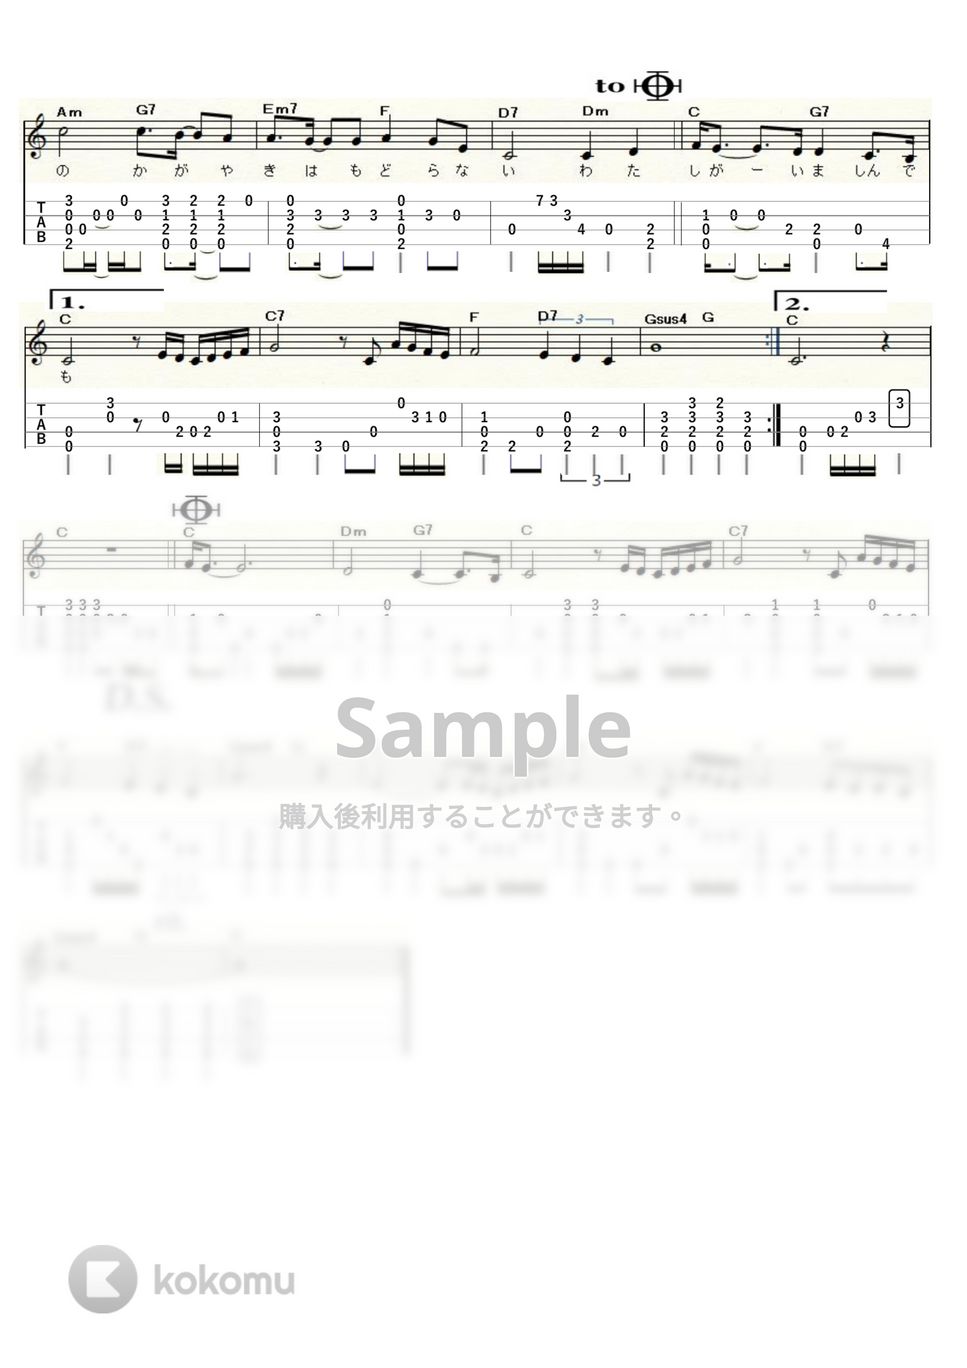 荒井由実 - 翳りゆく部屋 (ｳｸﾚﾚｿﾛ / Low-G / 中級) by ukulelepapa